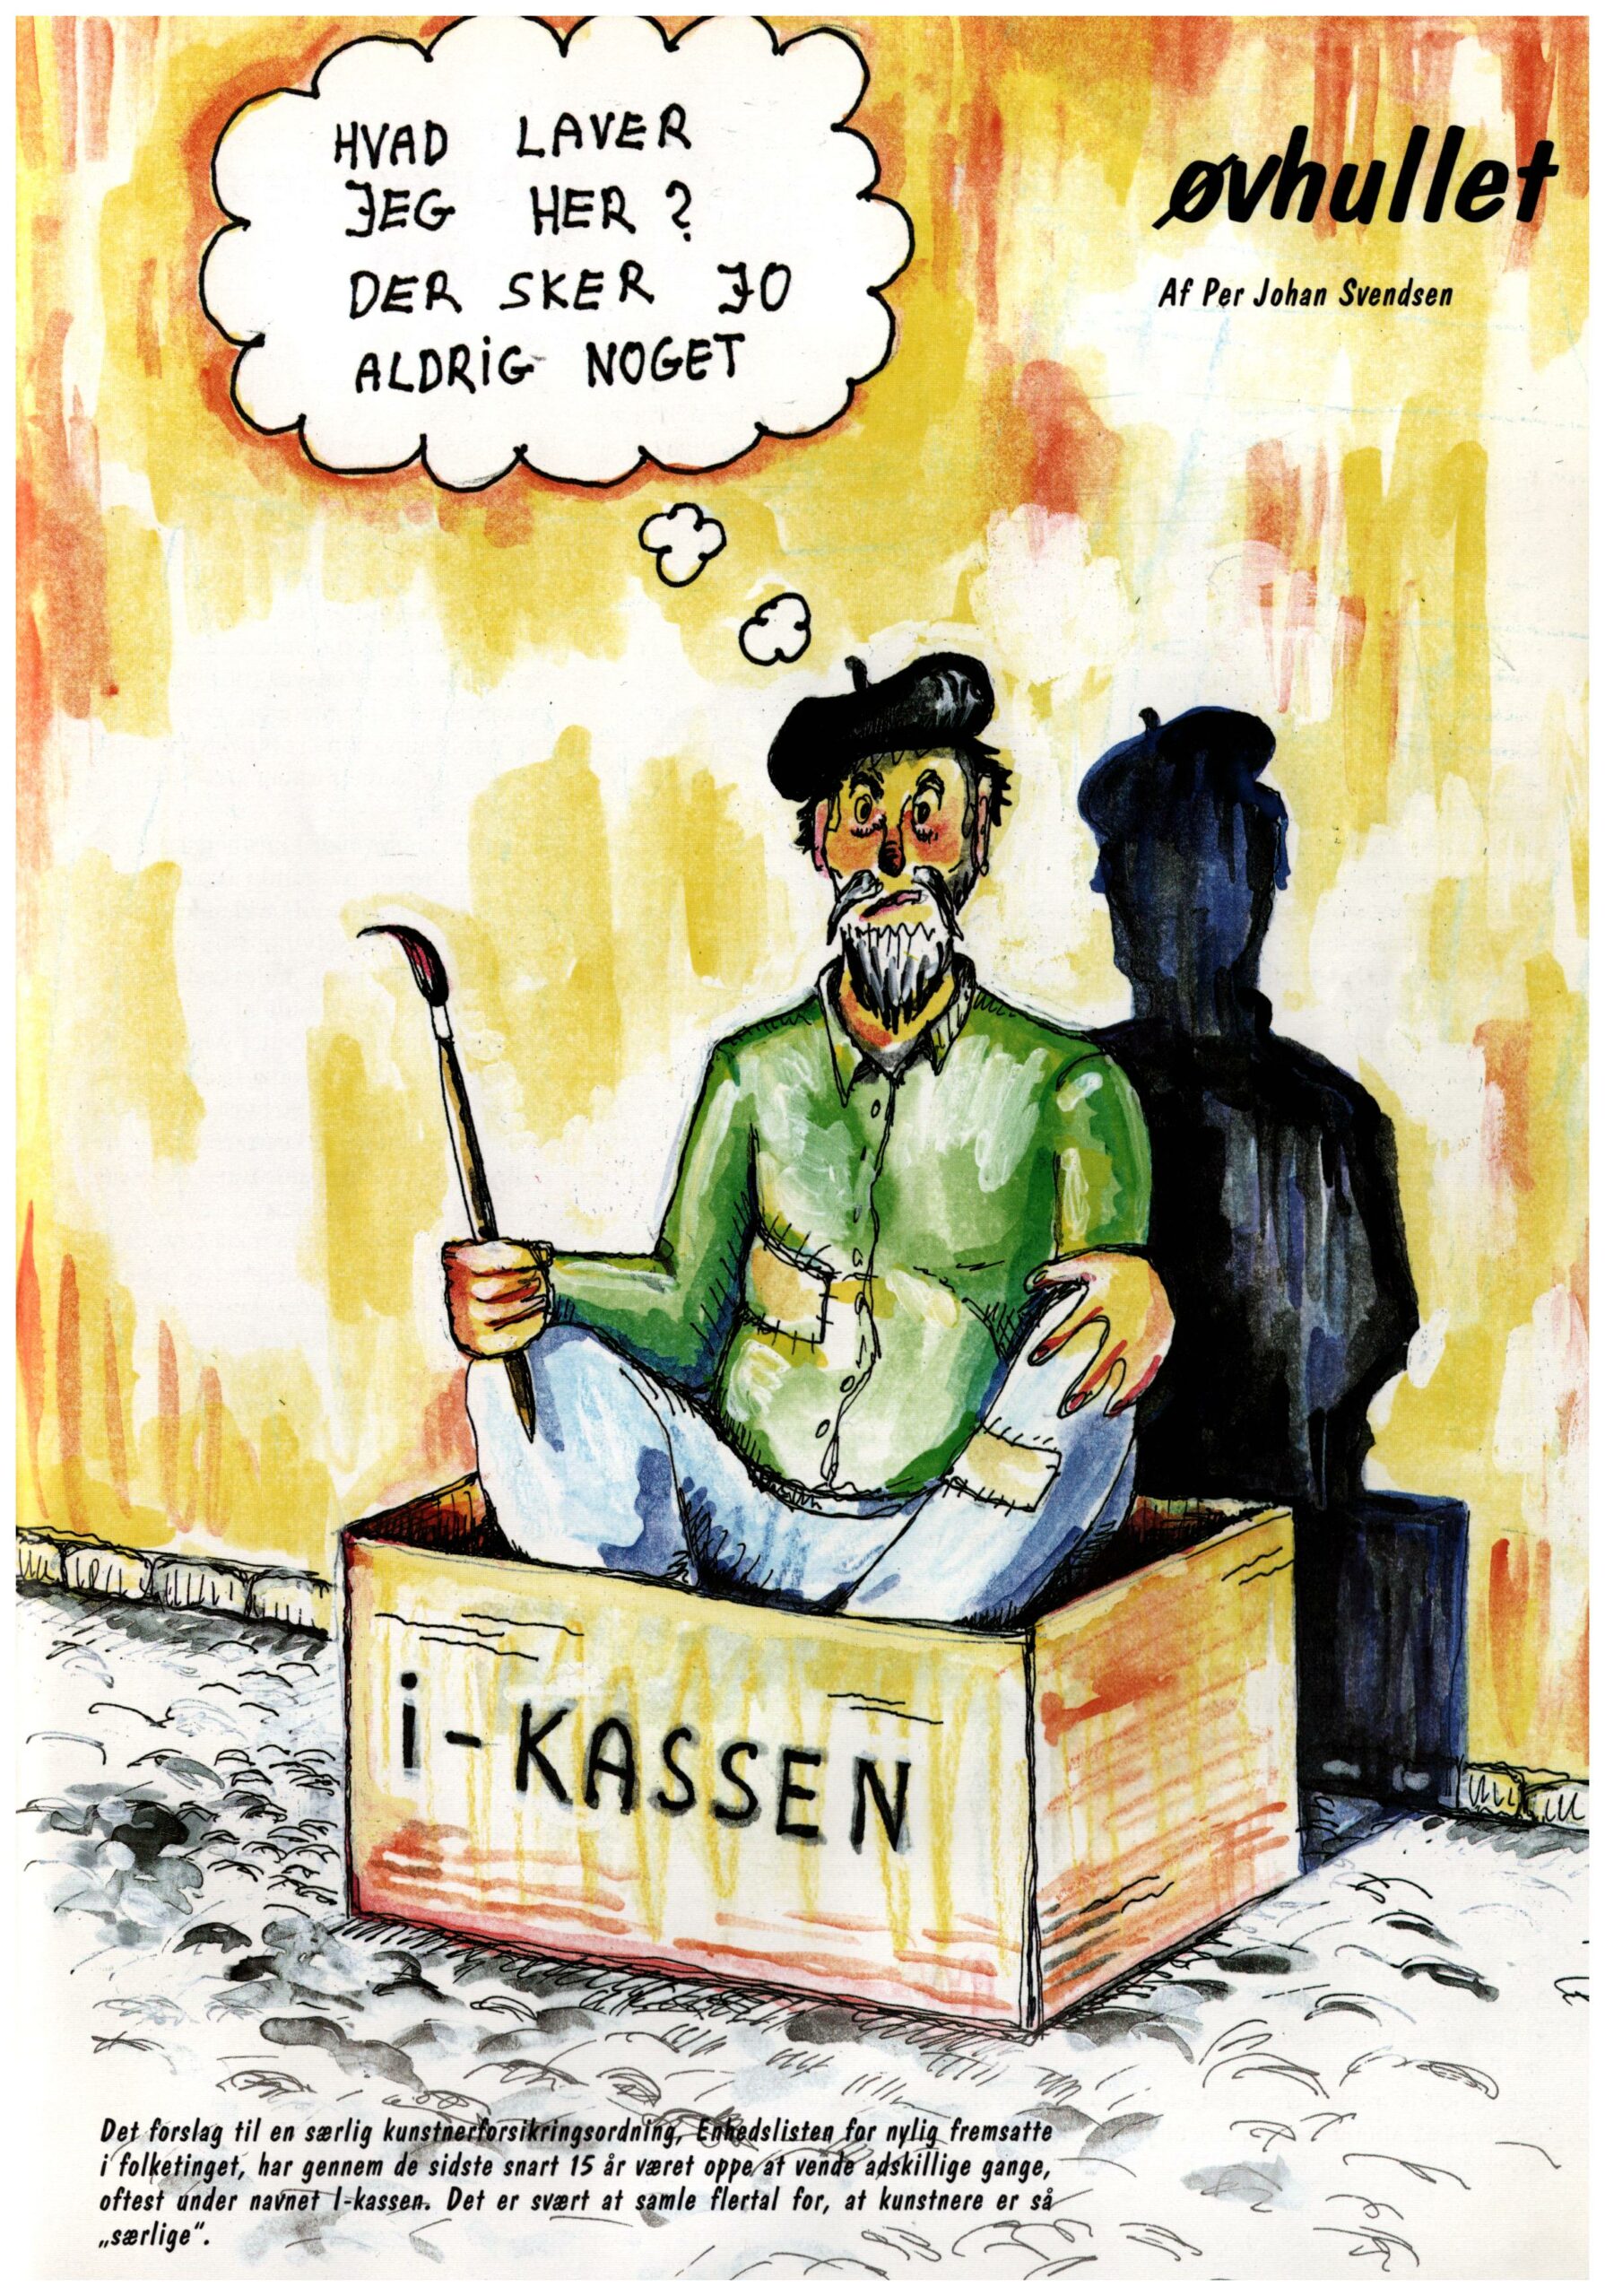 Øvhullet. I-kassen. Per Johan Svendsen. Tidsskriftet Kunst, nr. 3 1995.